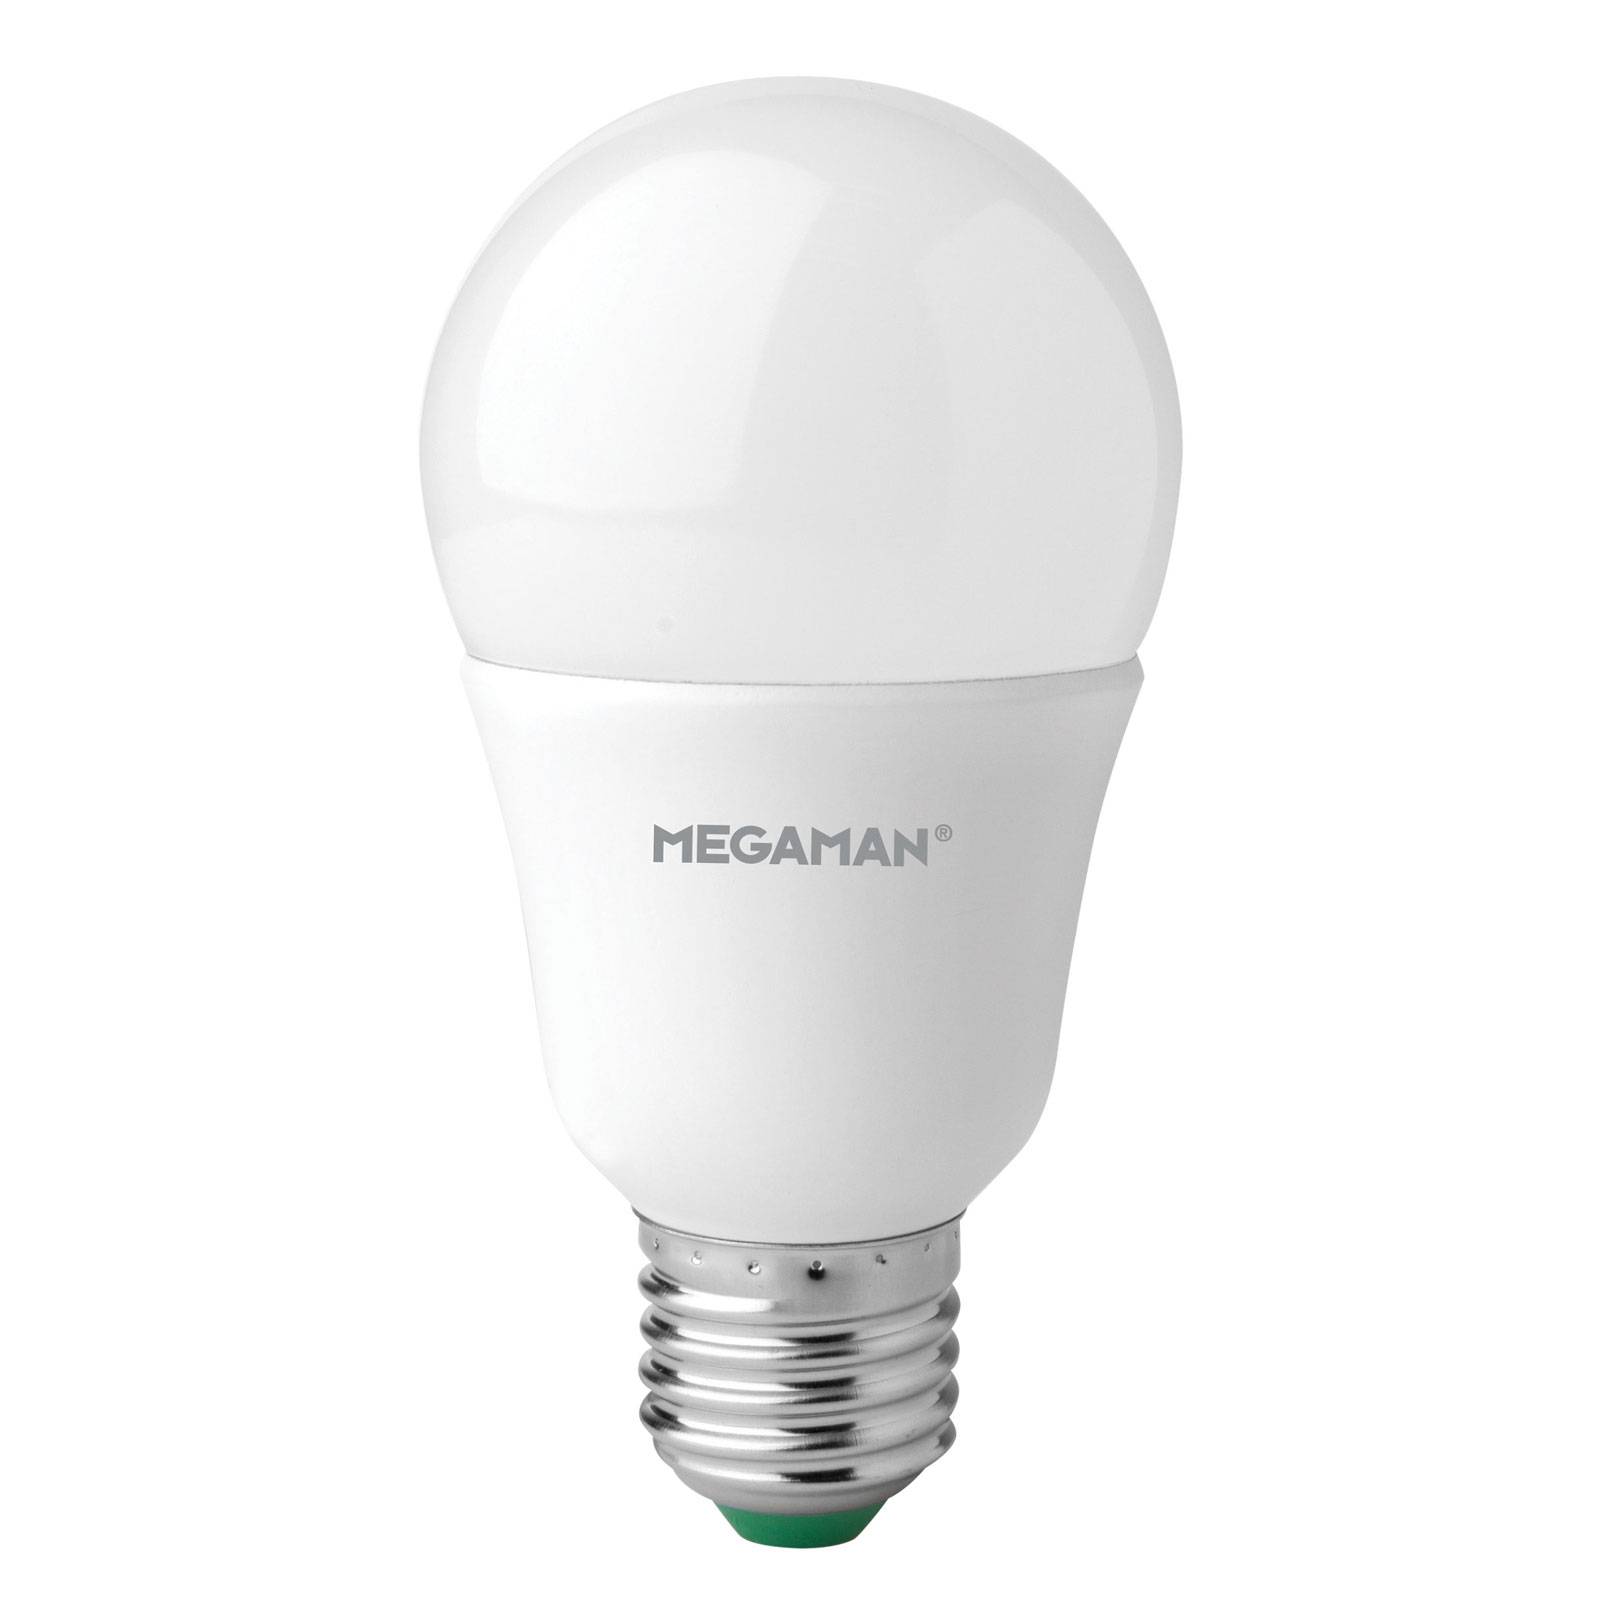 Megaman Ampoule LED E27 A60 11 W opale, blanc neutre